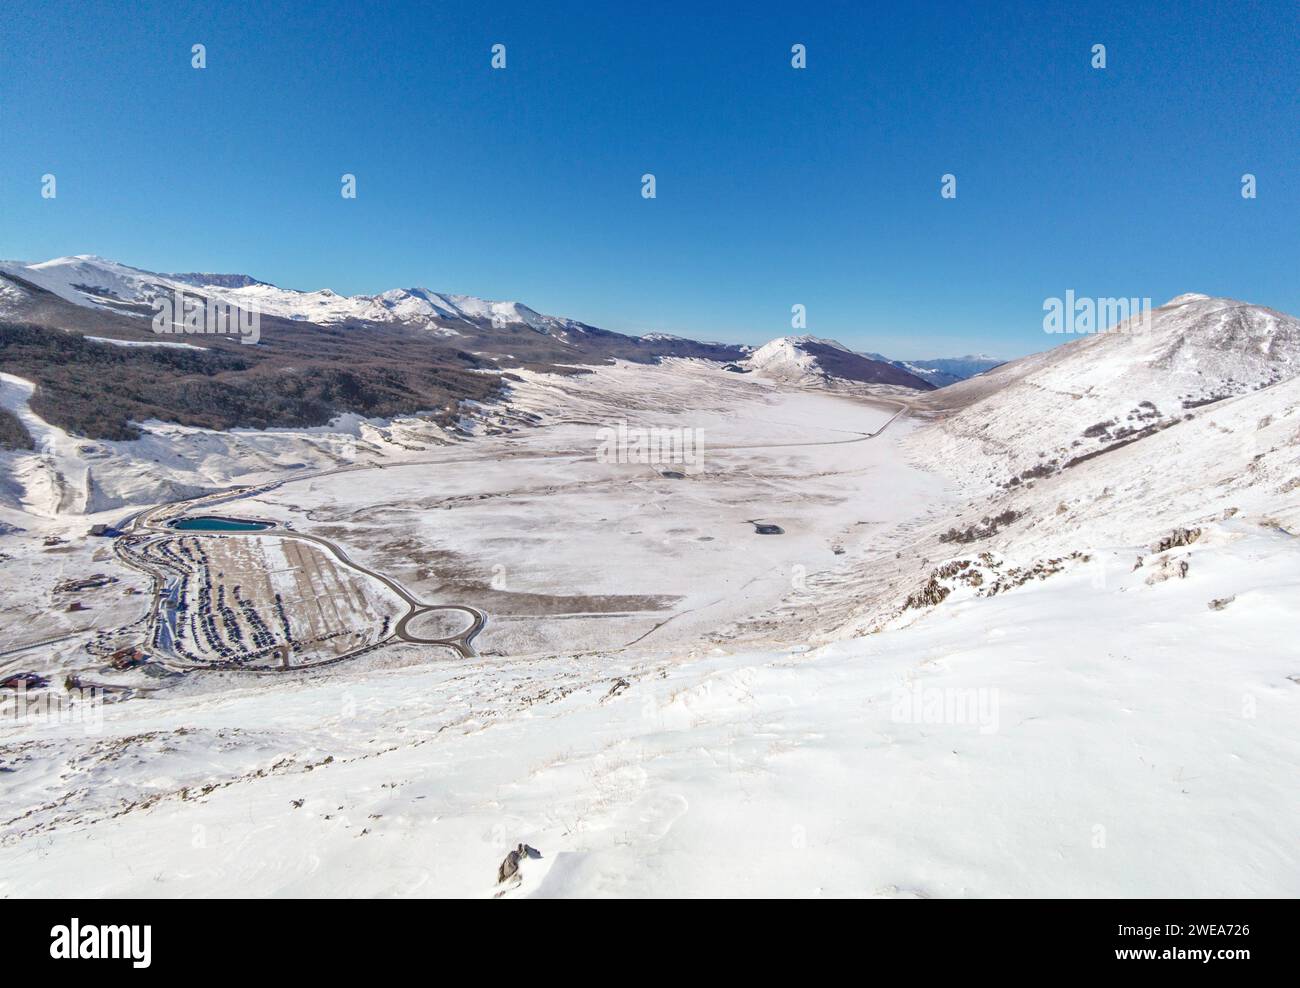 Campo felice, Italia - la suggestiva vetta dell'altopiano abruzzese, la catena montuosa del Monte Rotondo, durante l'inverno con neve e alpinisti Foto Stock